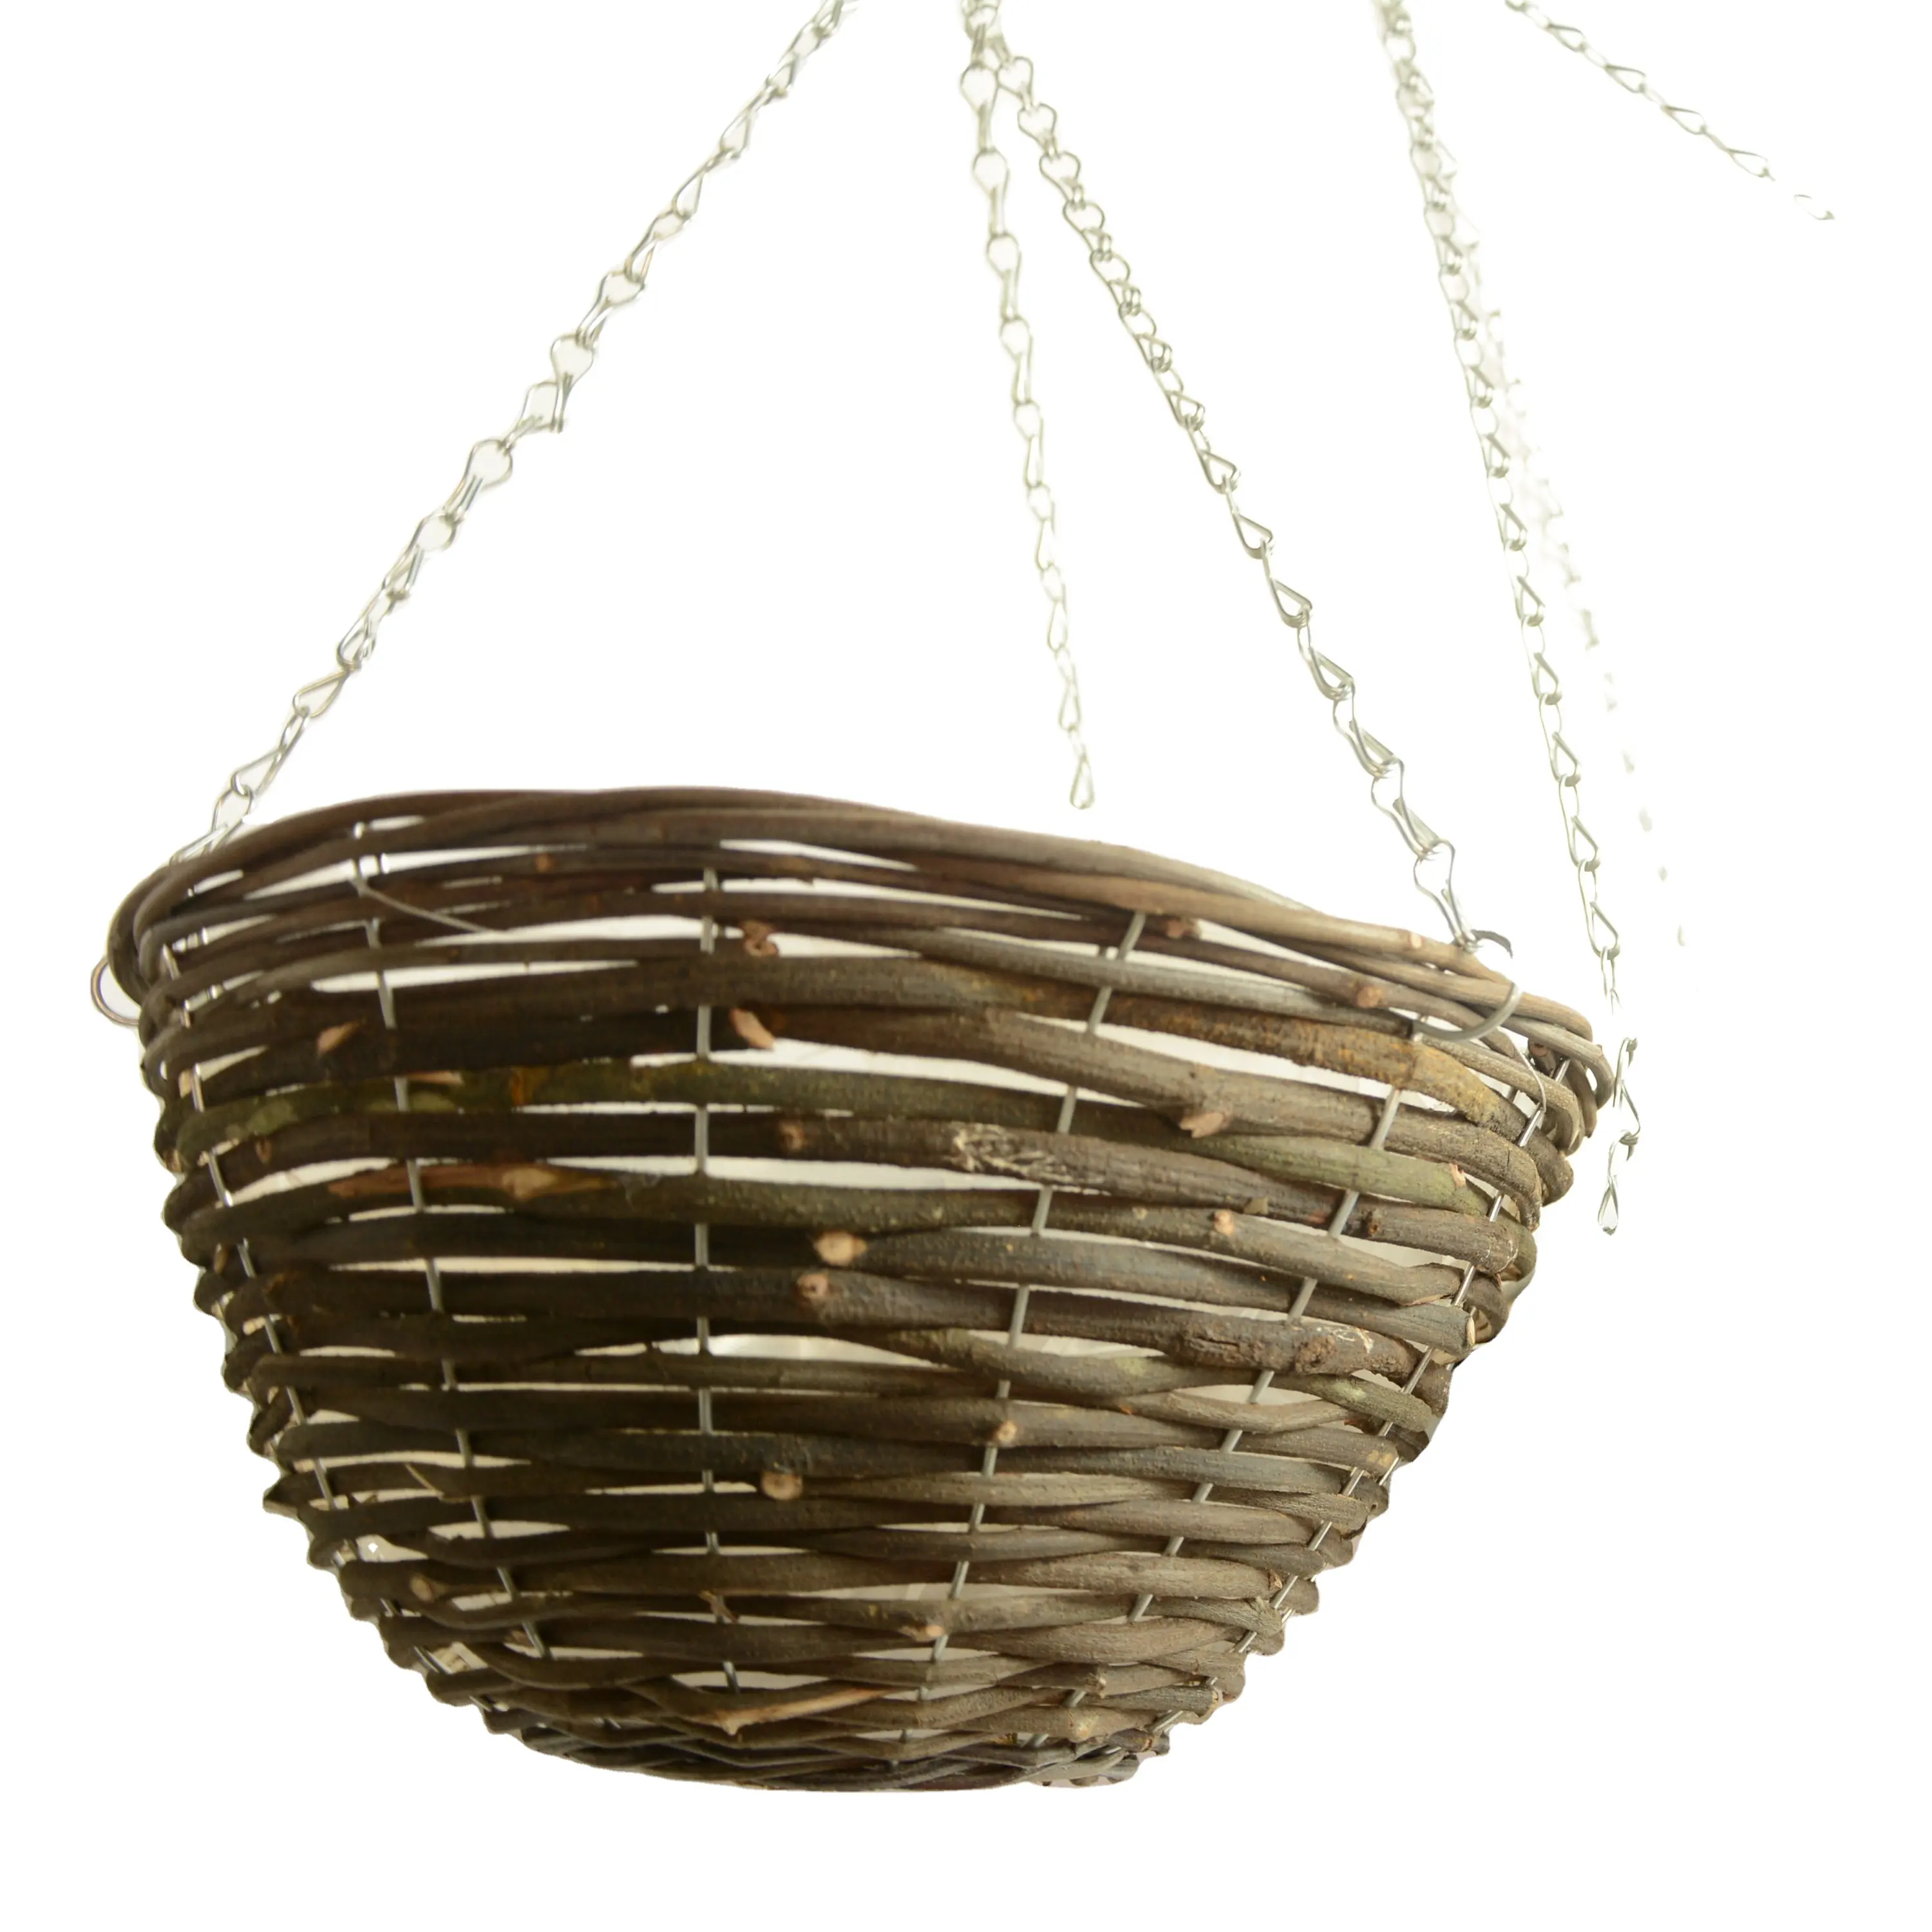 100% Natural Rattan Hanging Flower Planting Basket Pots Round shape basket